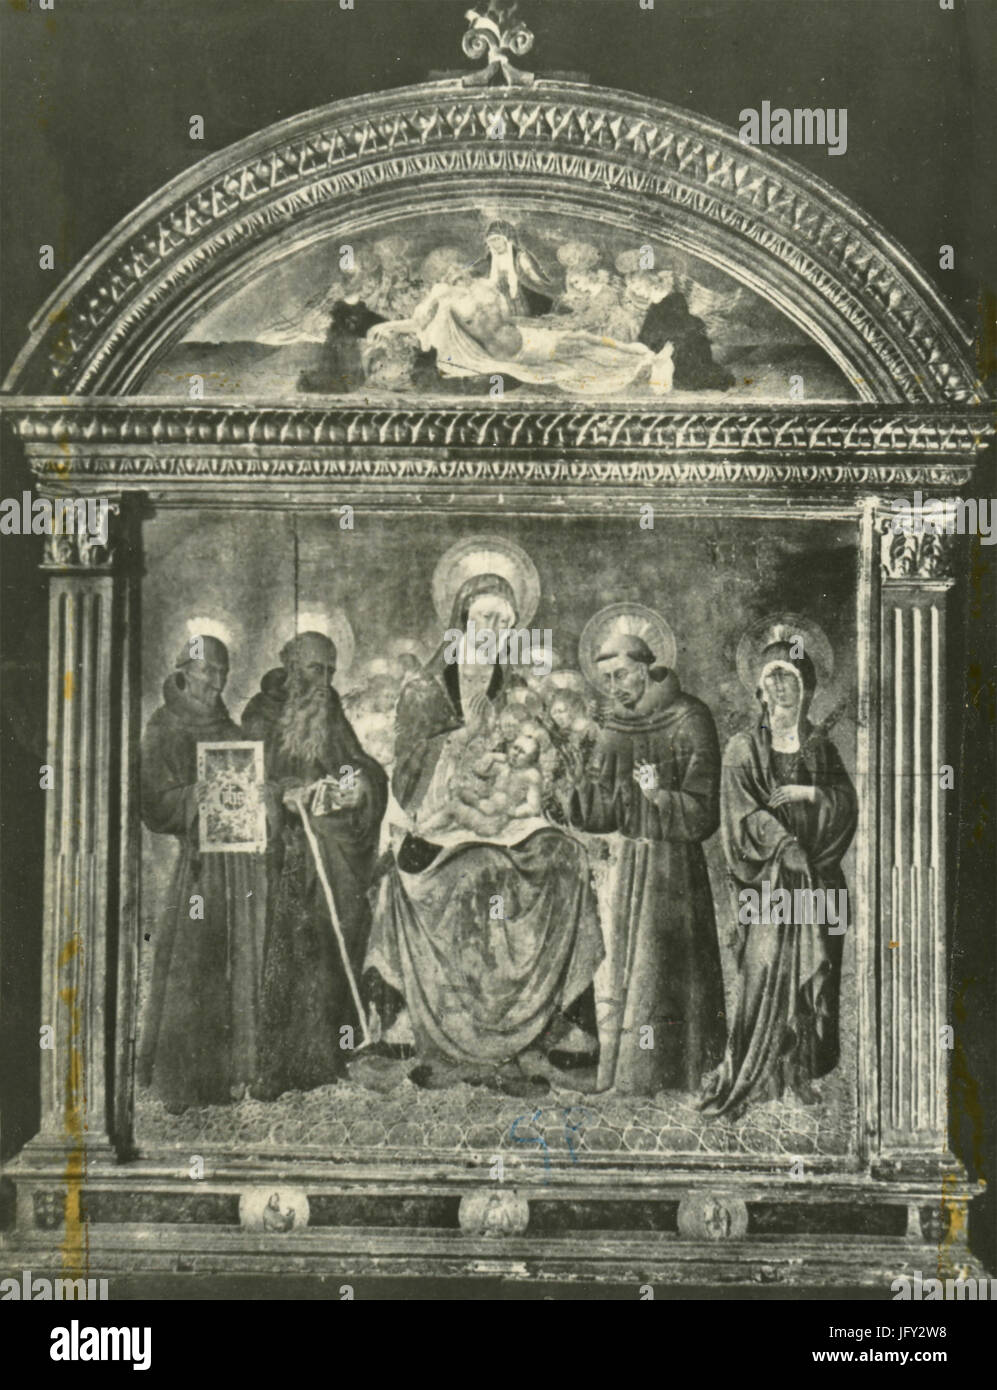 La Vierge et l'enfant avec les saints, la peinture de Giovanni di Paolo, Pienza, Italie Banque D'Images